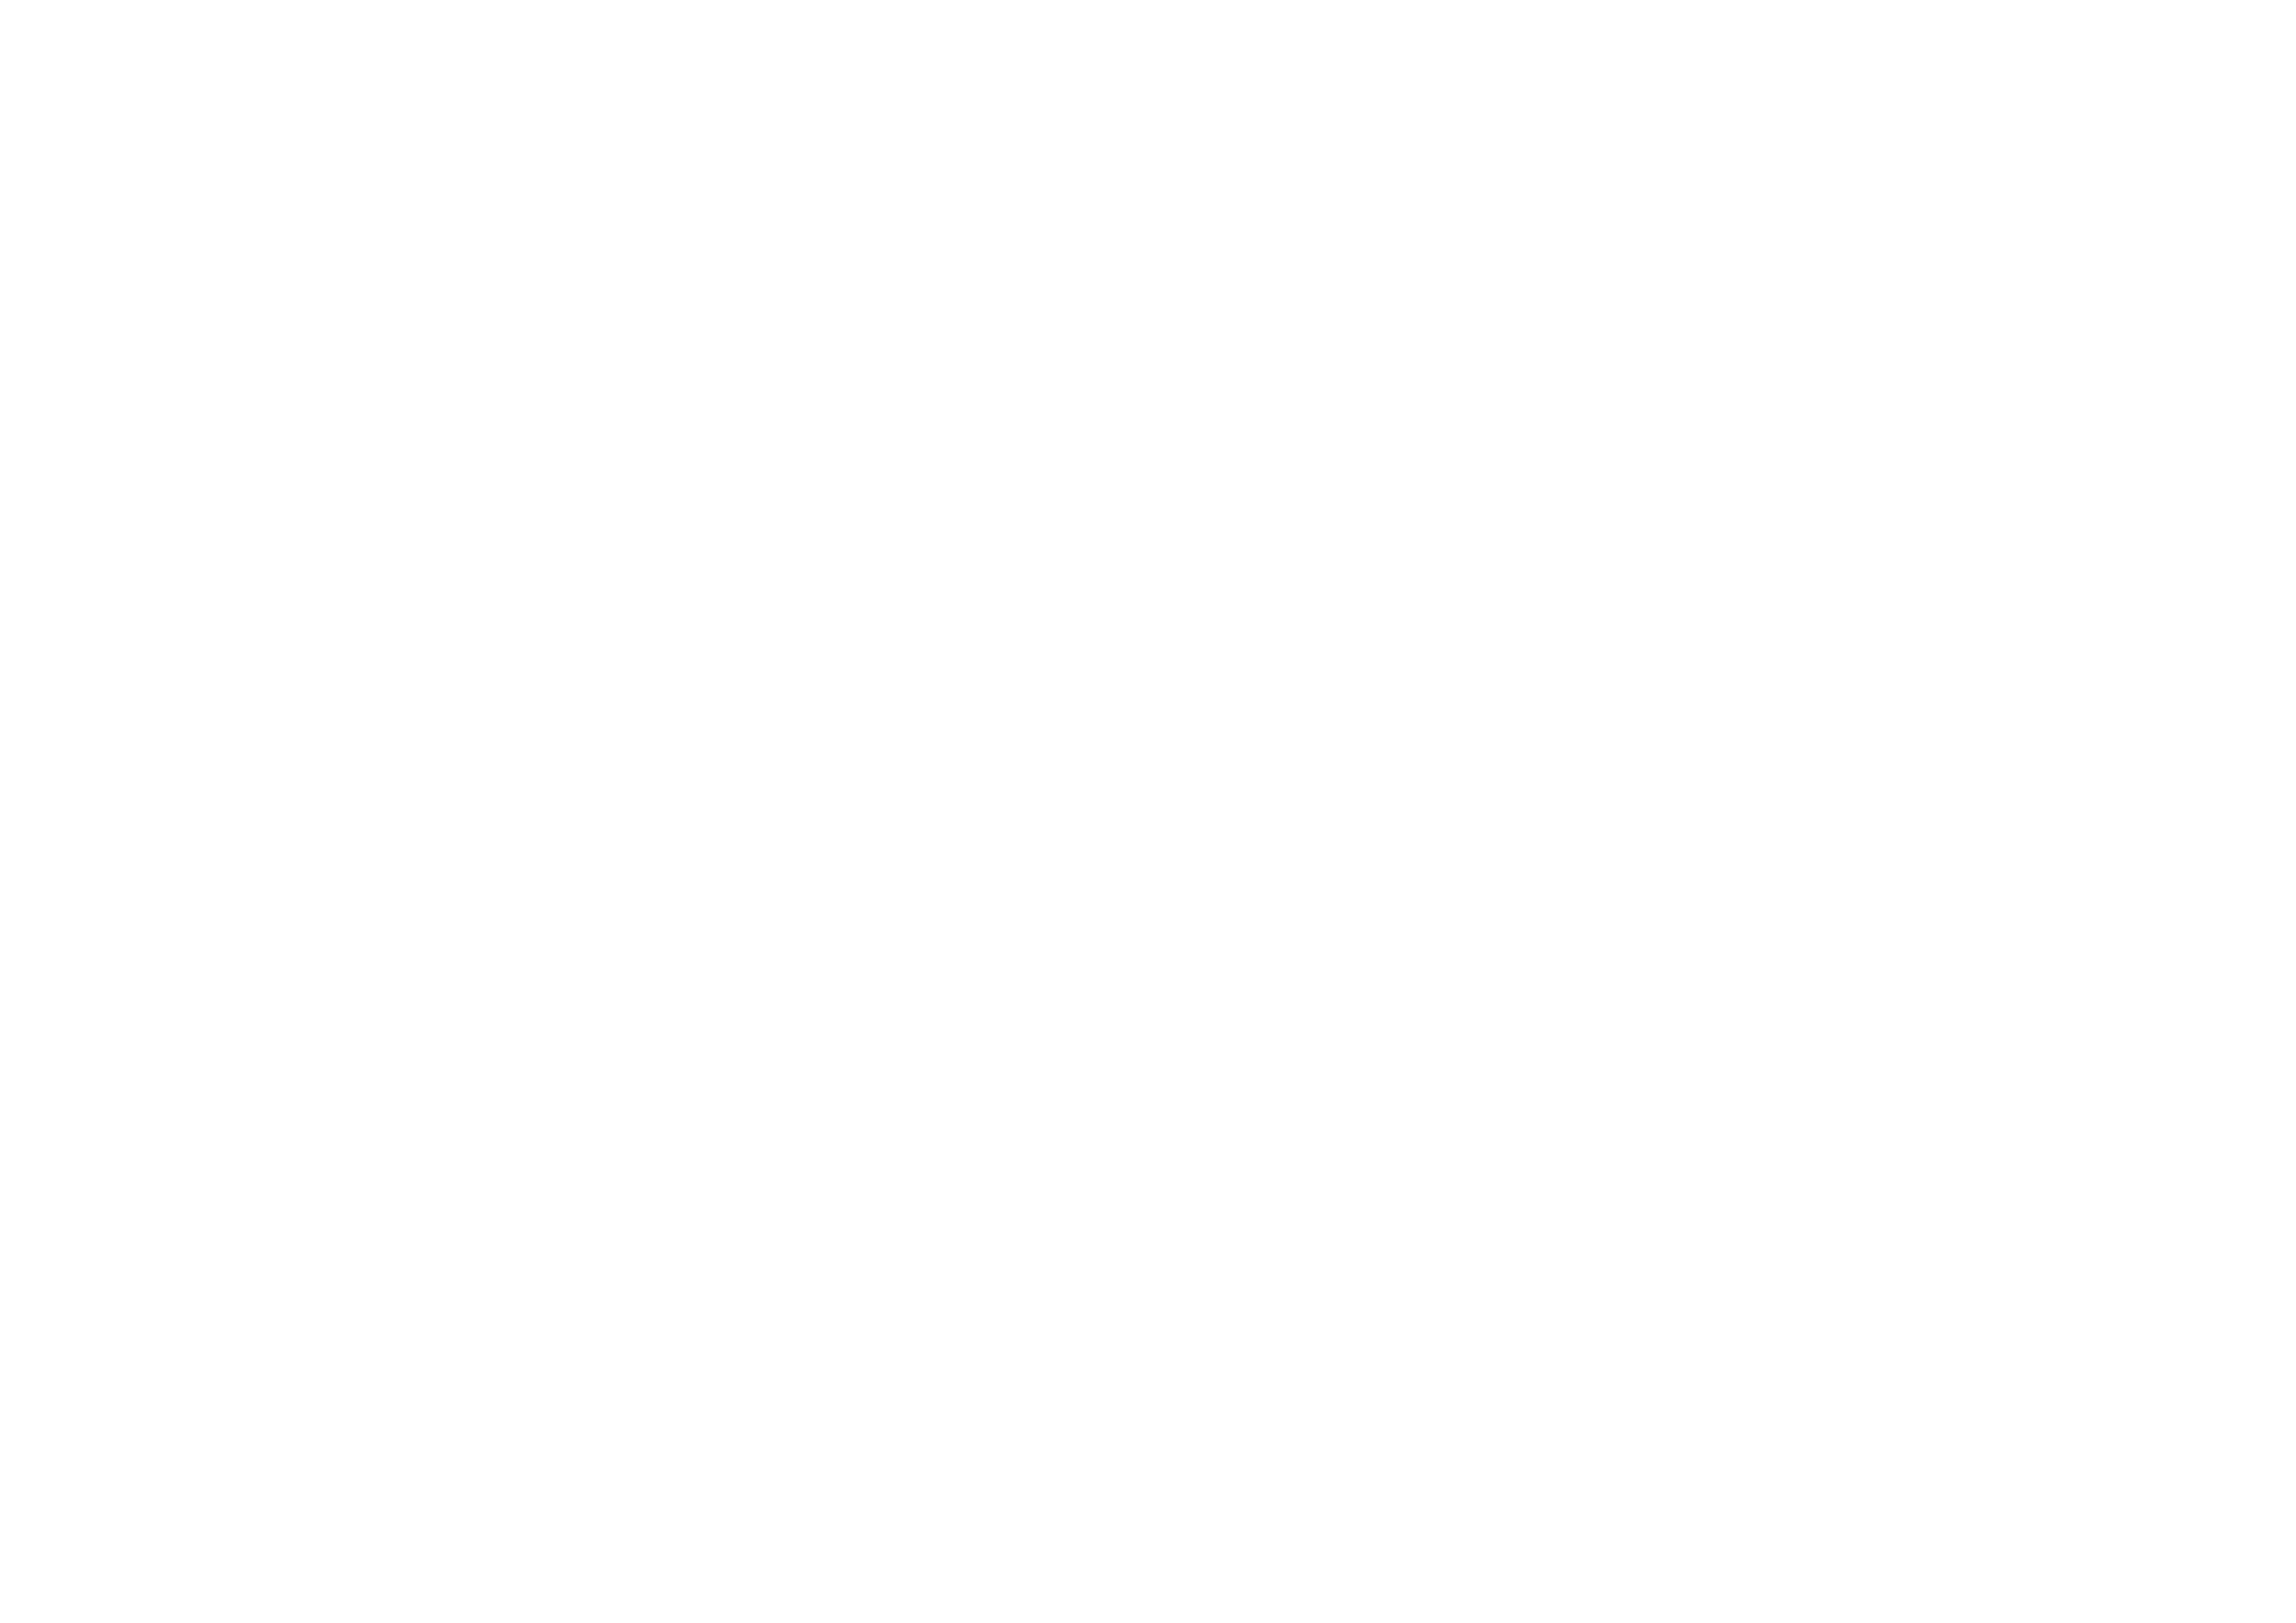 ON Academy